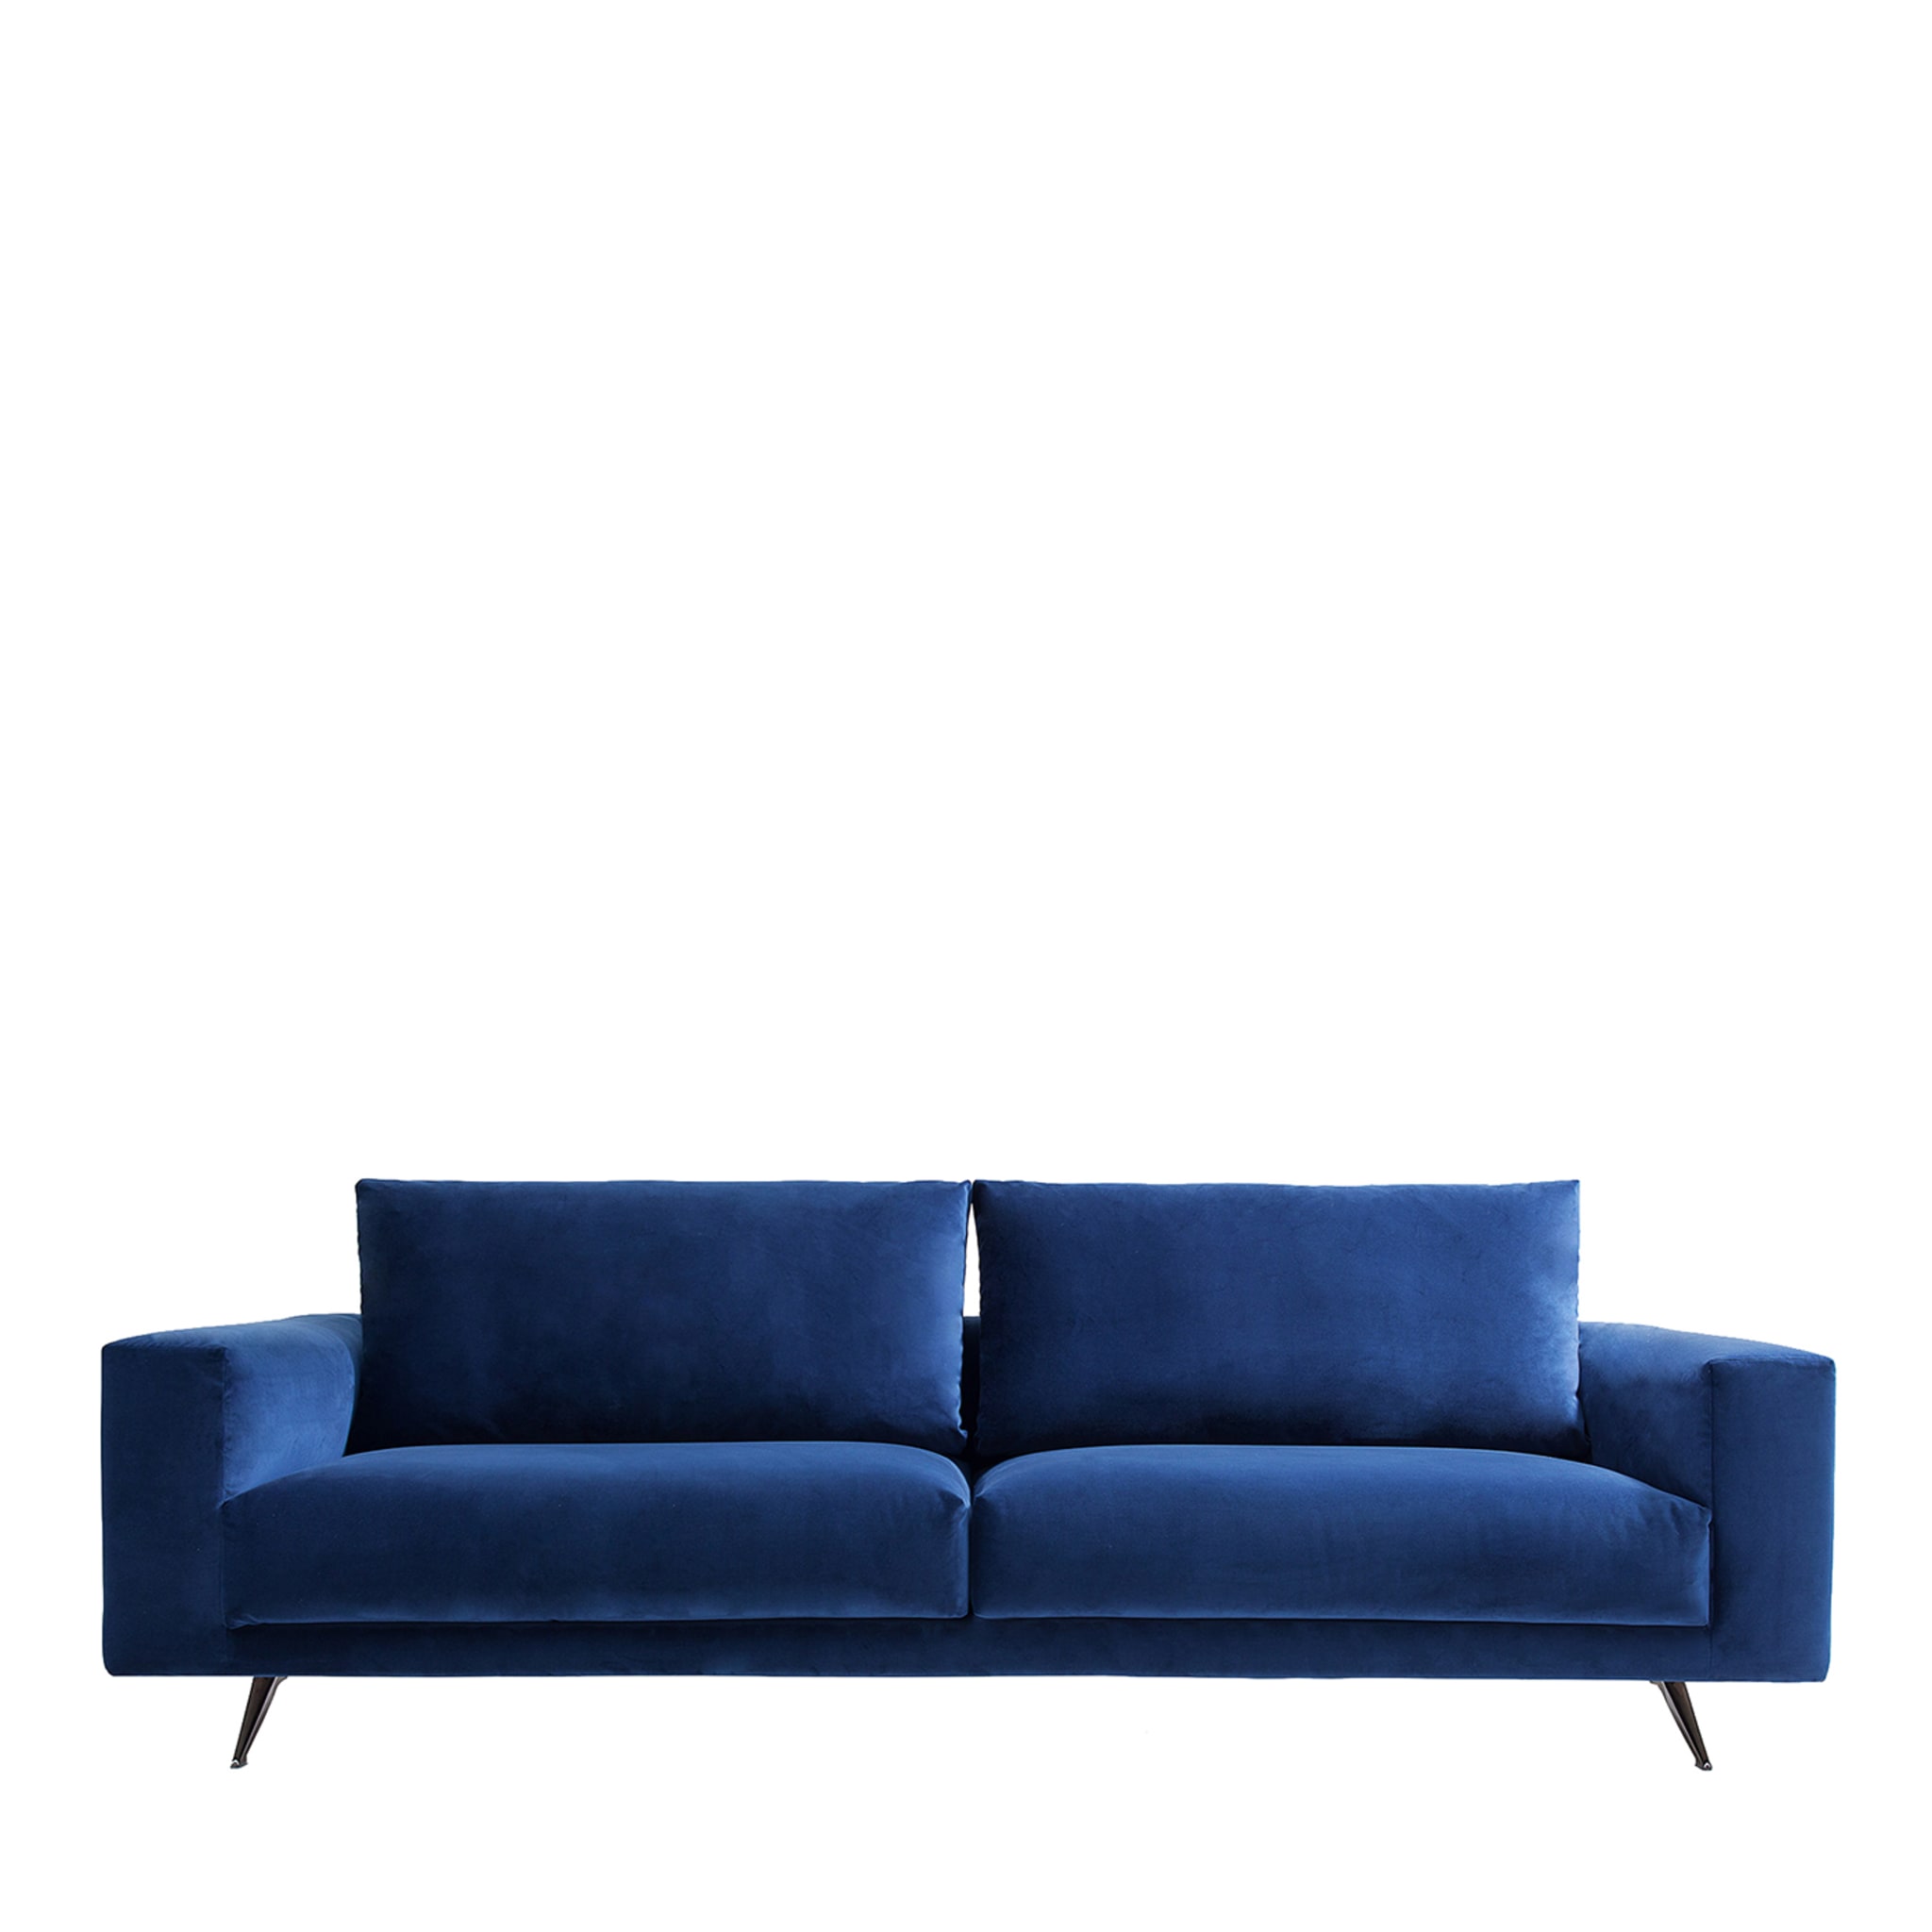 Re set 580 Blaues sofa mit rechteckigen kissen by G. Landoni - Hauptansicht